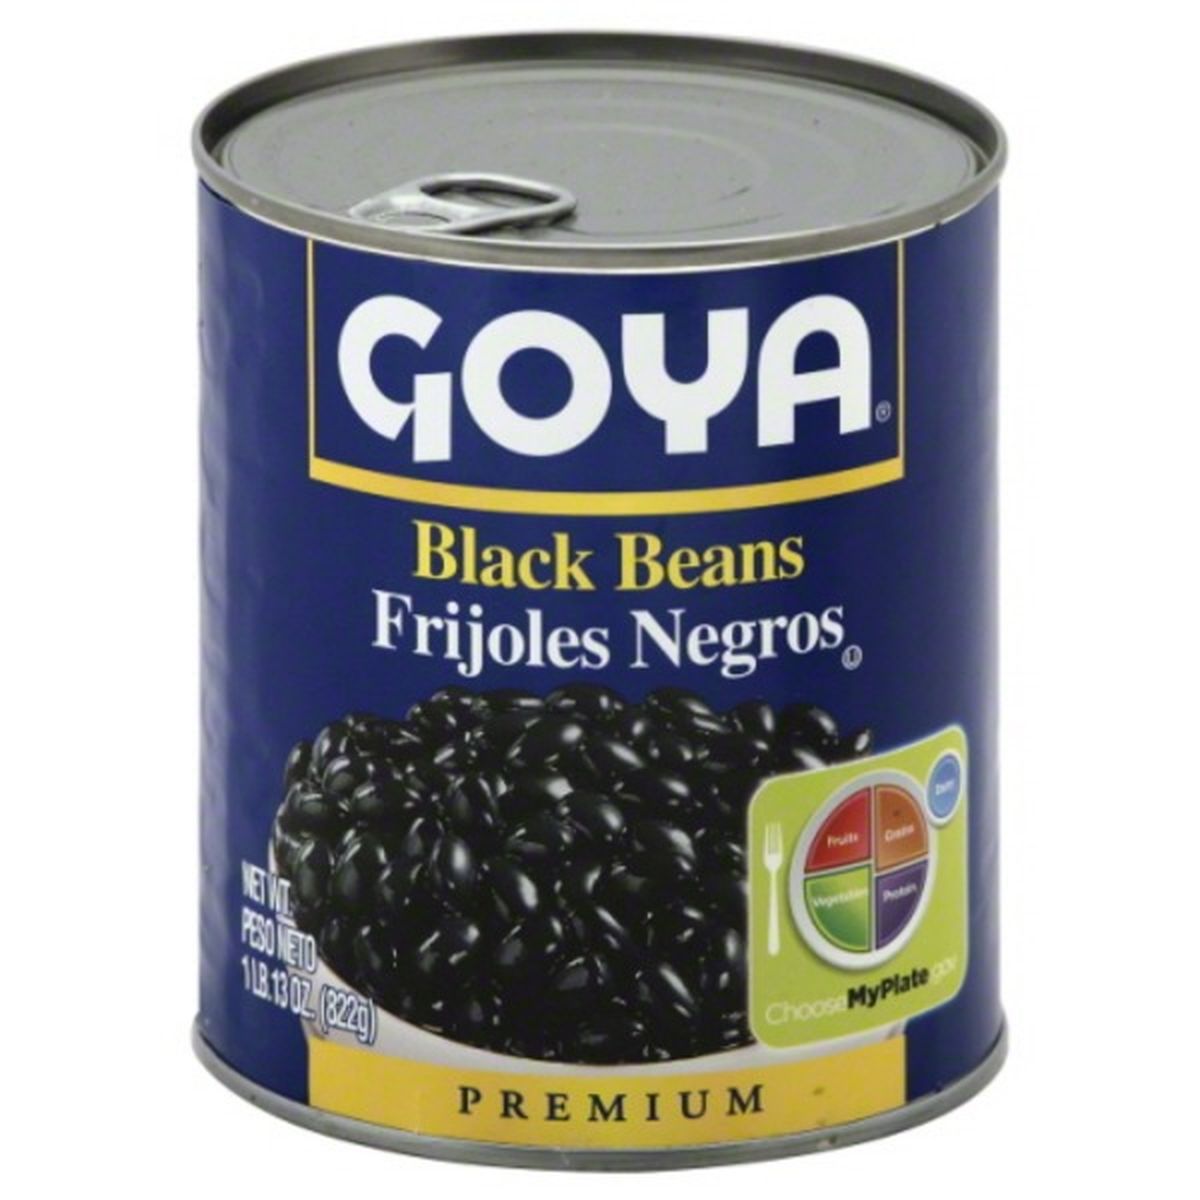 Calories in Goya Black Beans, Premium